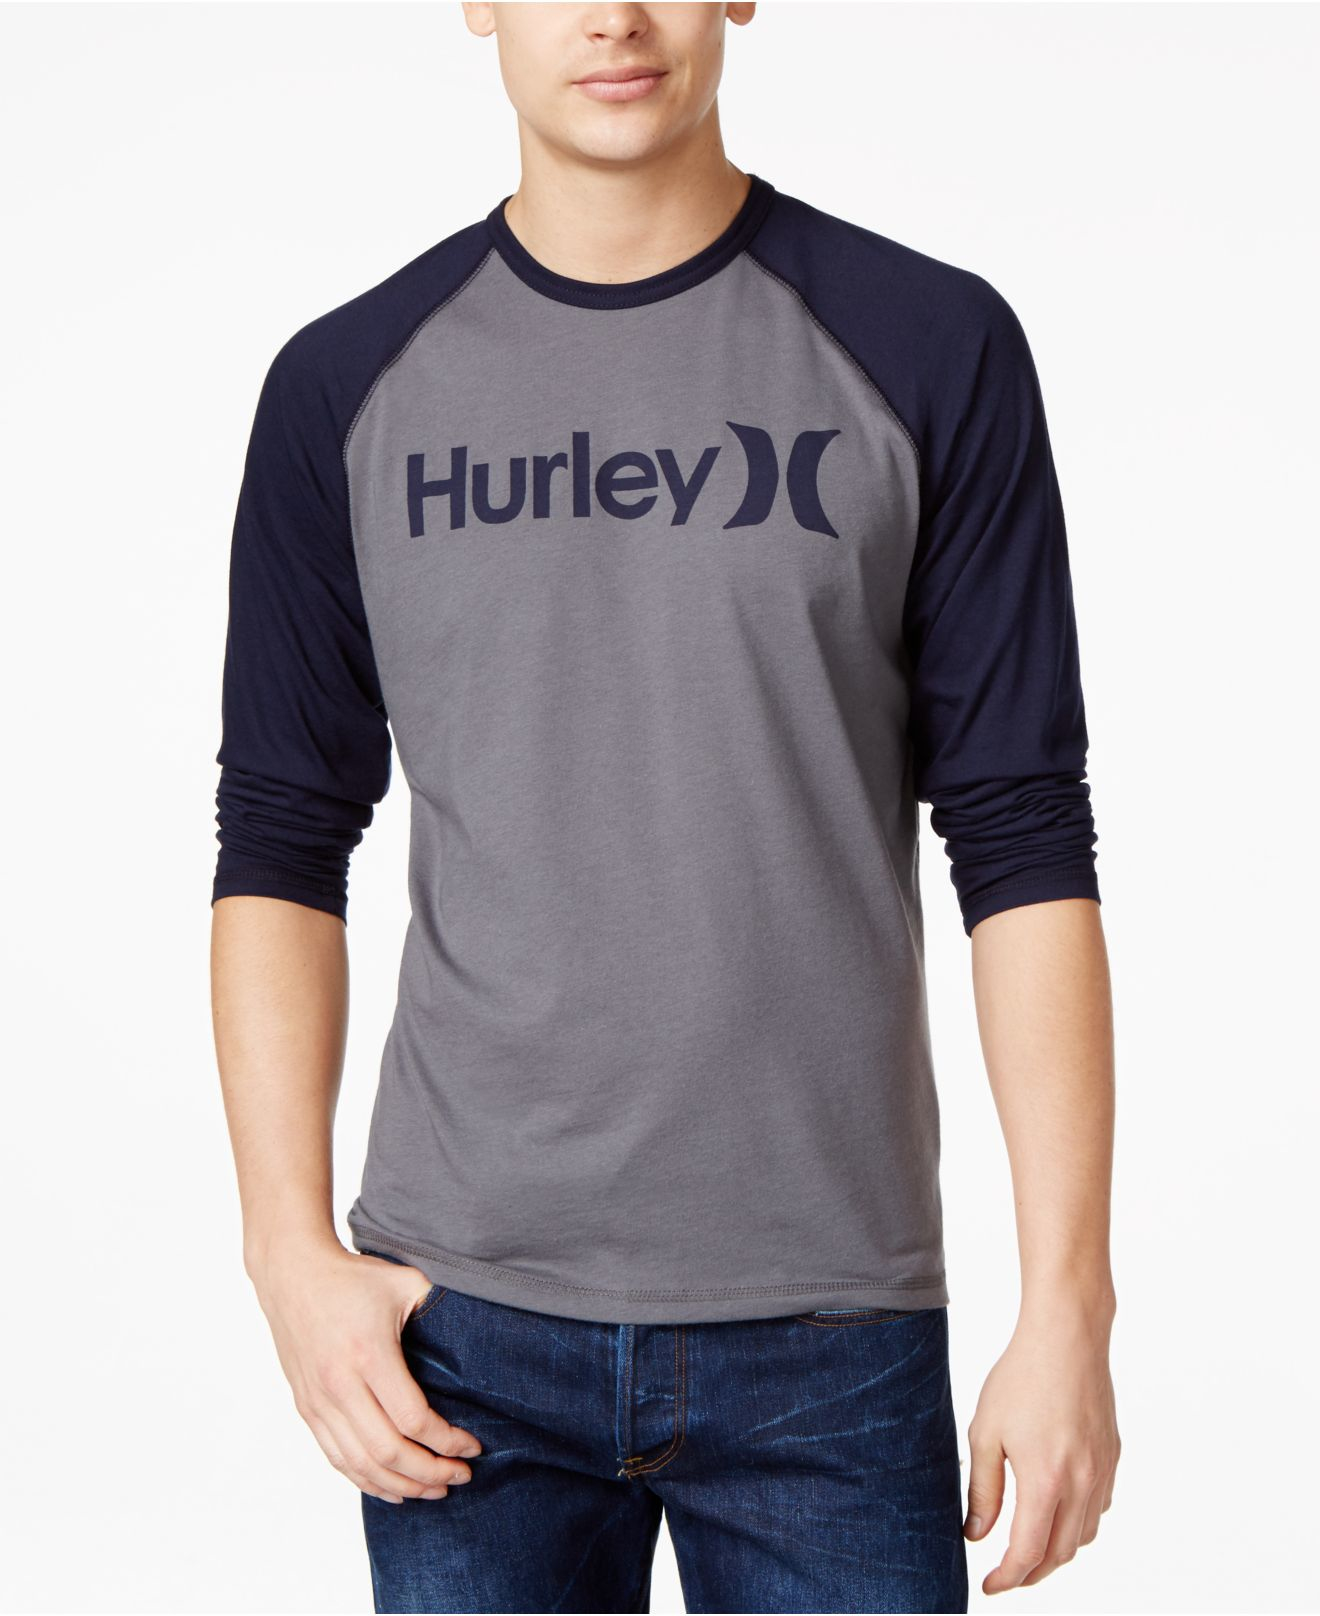 hurley baseball shirt